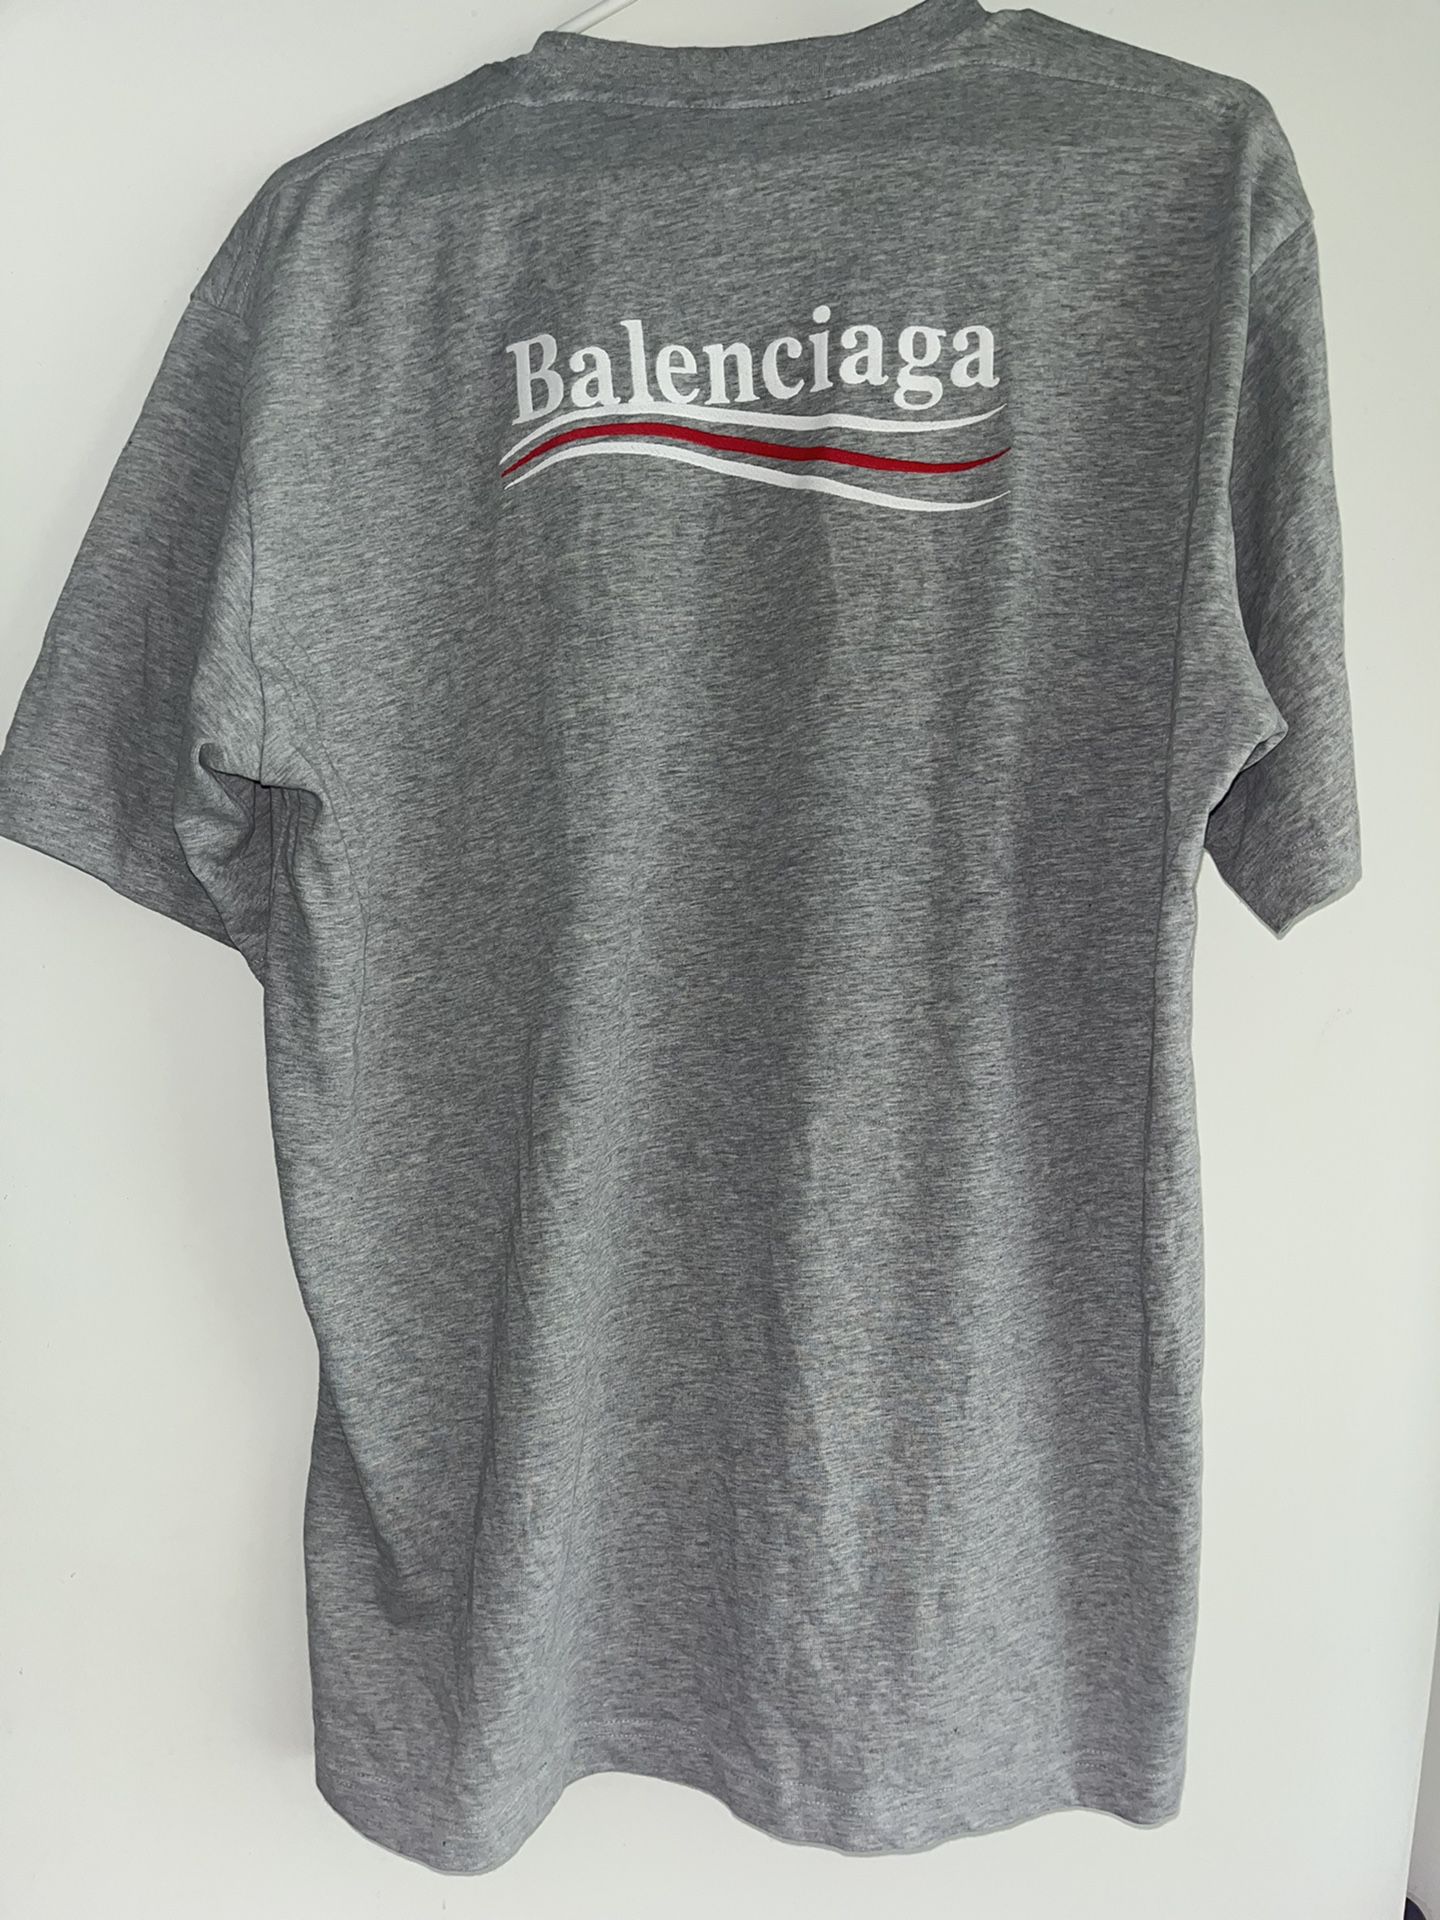 Balenciaga political logo T-shirt